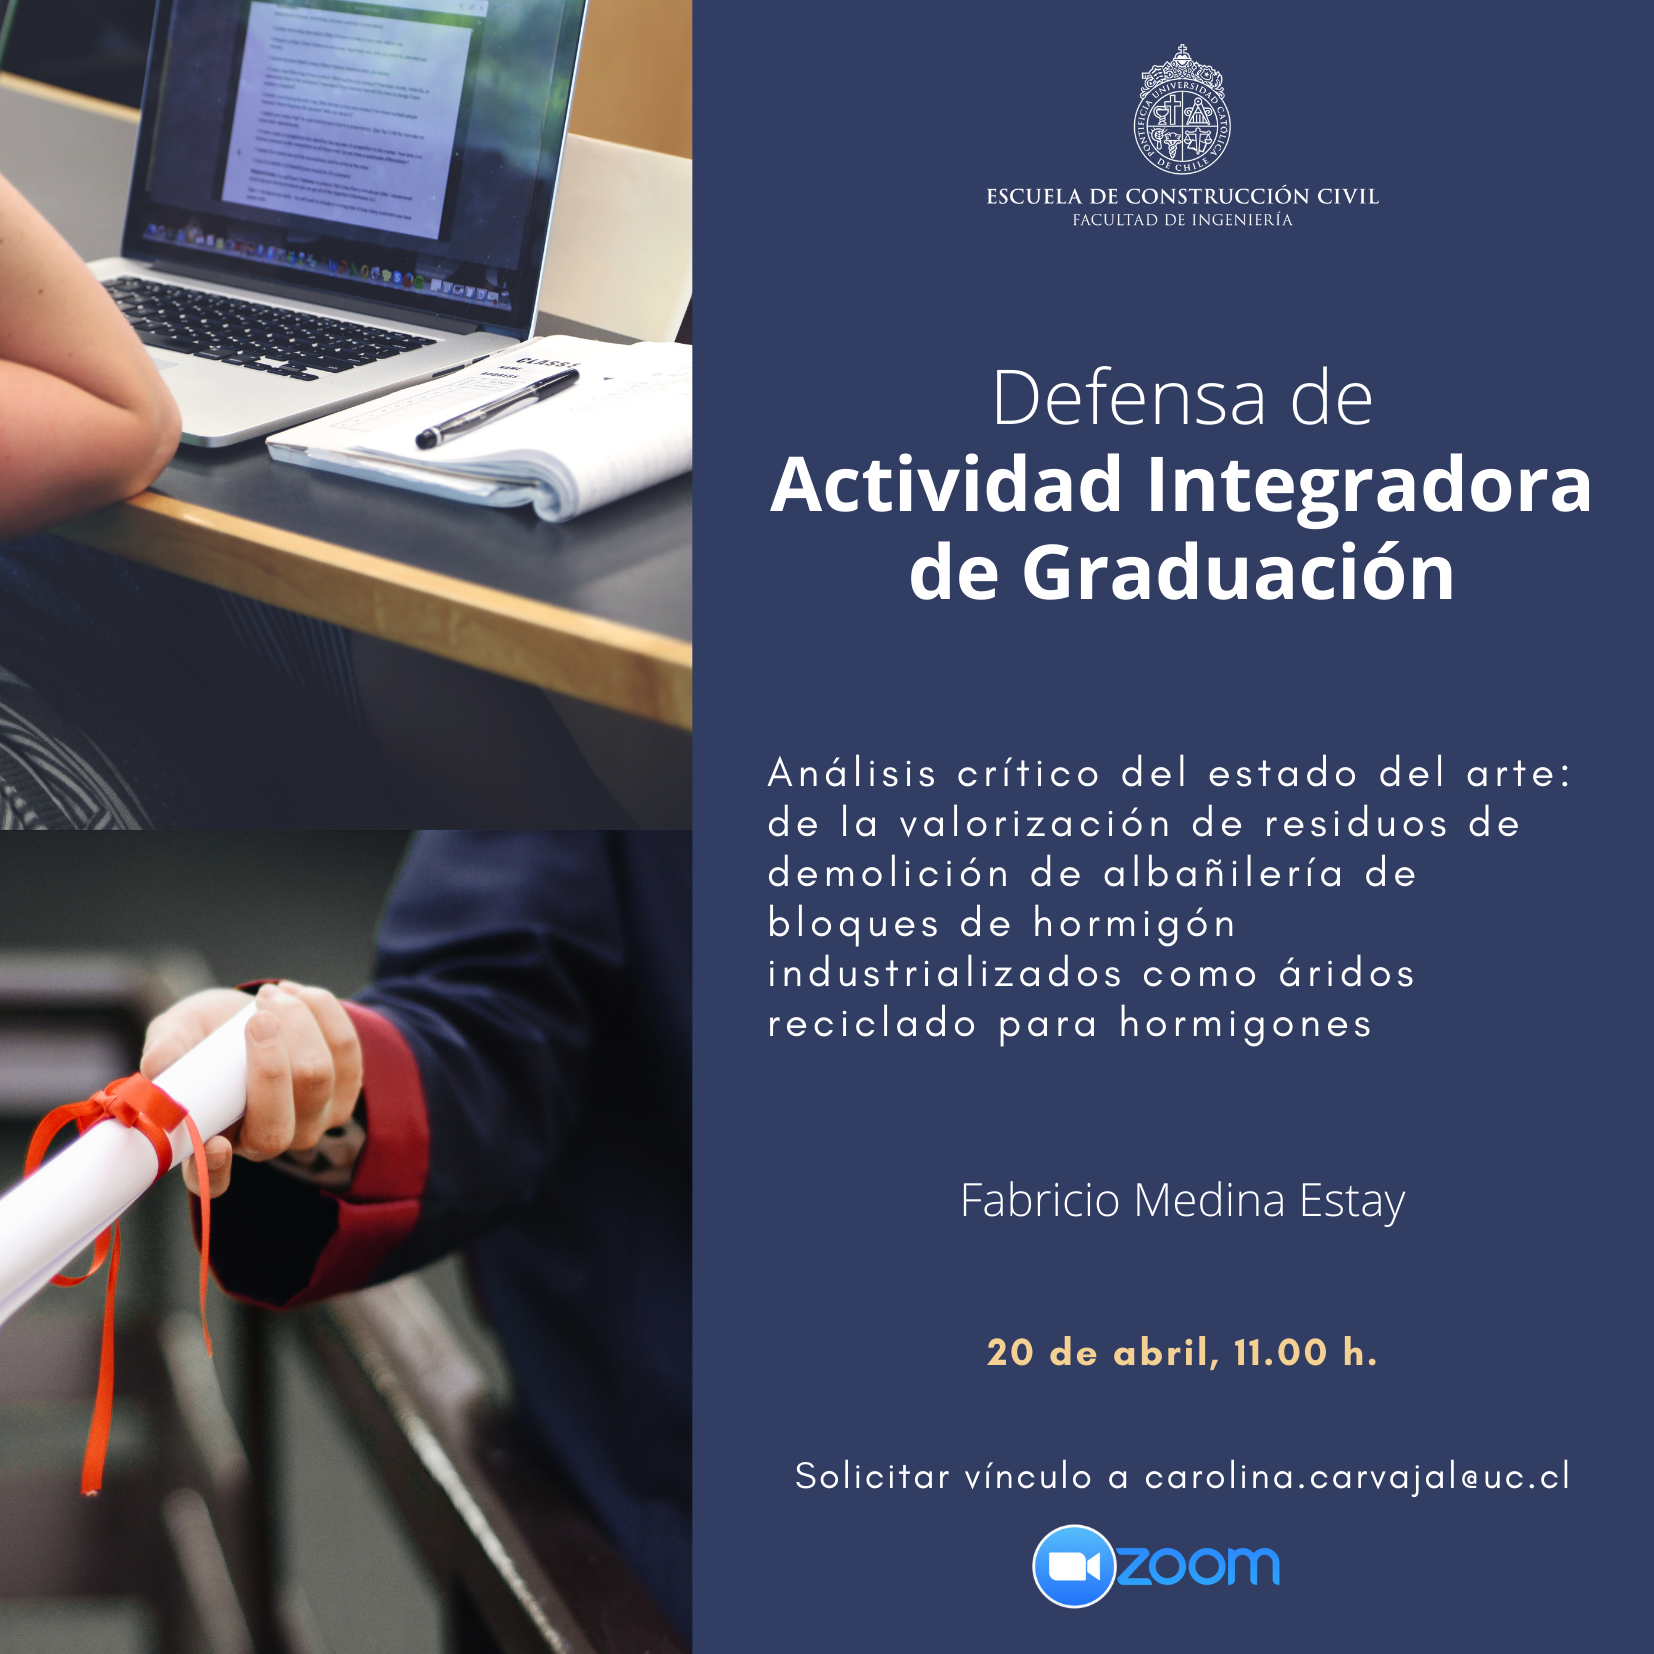 Defensa de Actividad Integradora de Graduación (AIG) - Fabricio Medina Estay